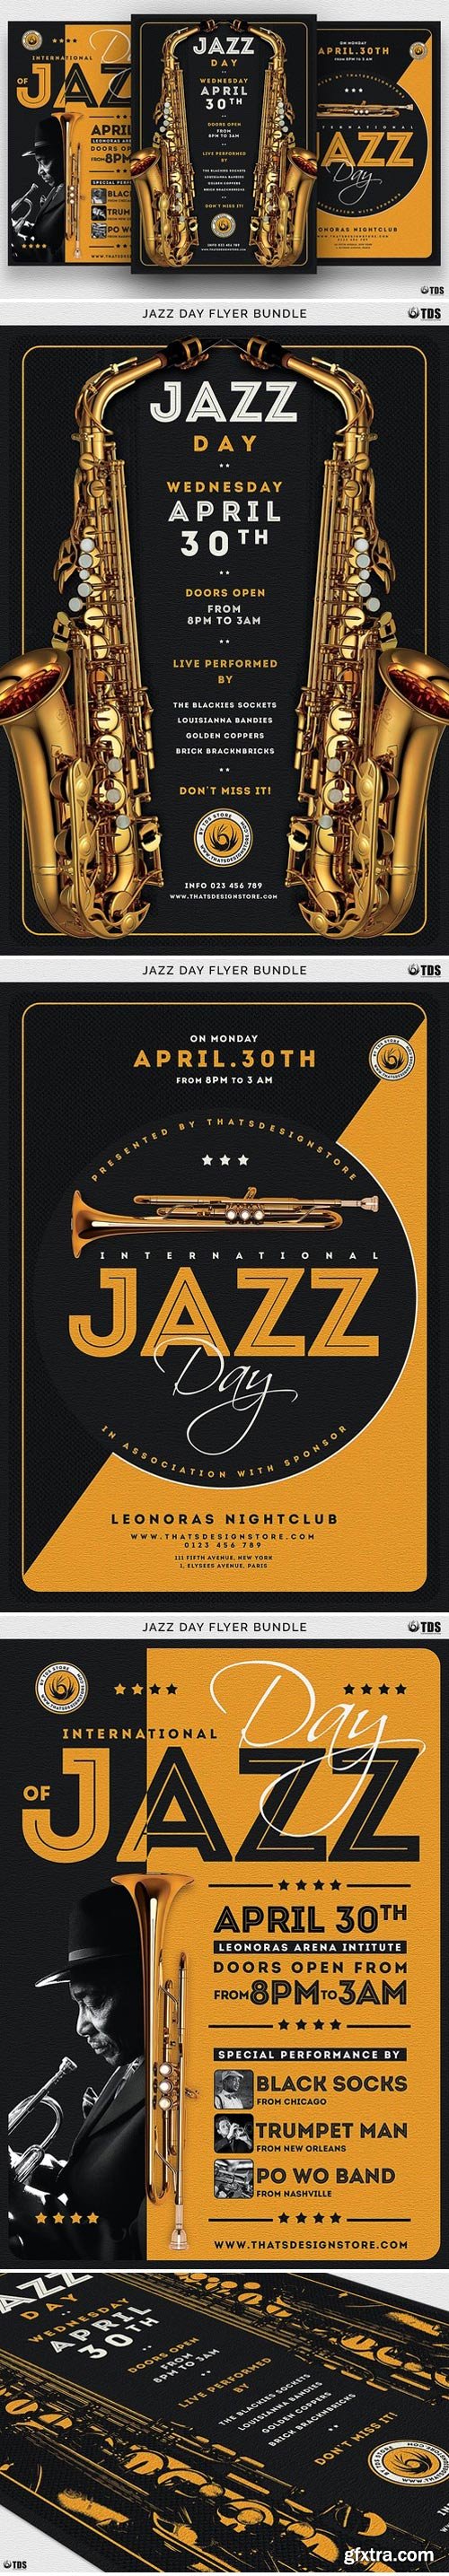 CM - Jazz Day Flyer Bundle 2070204